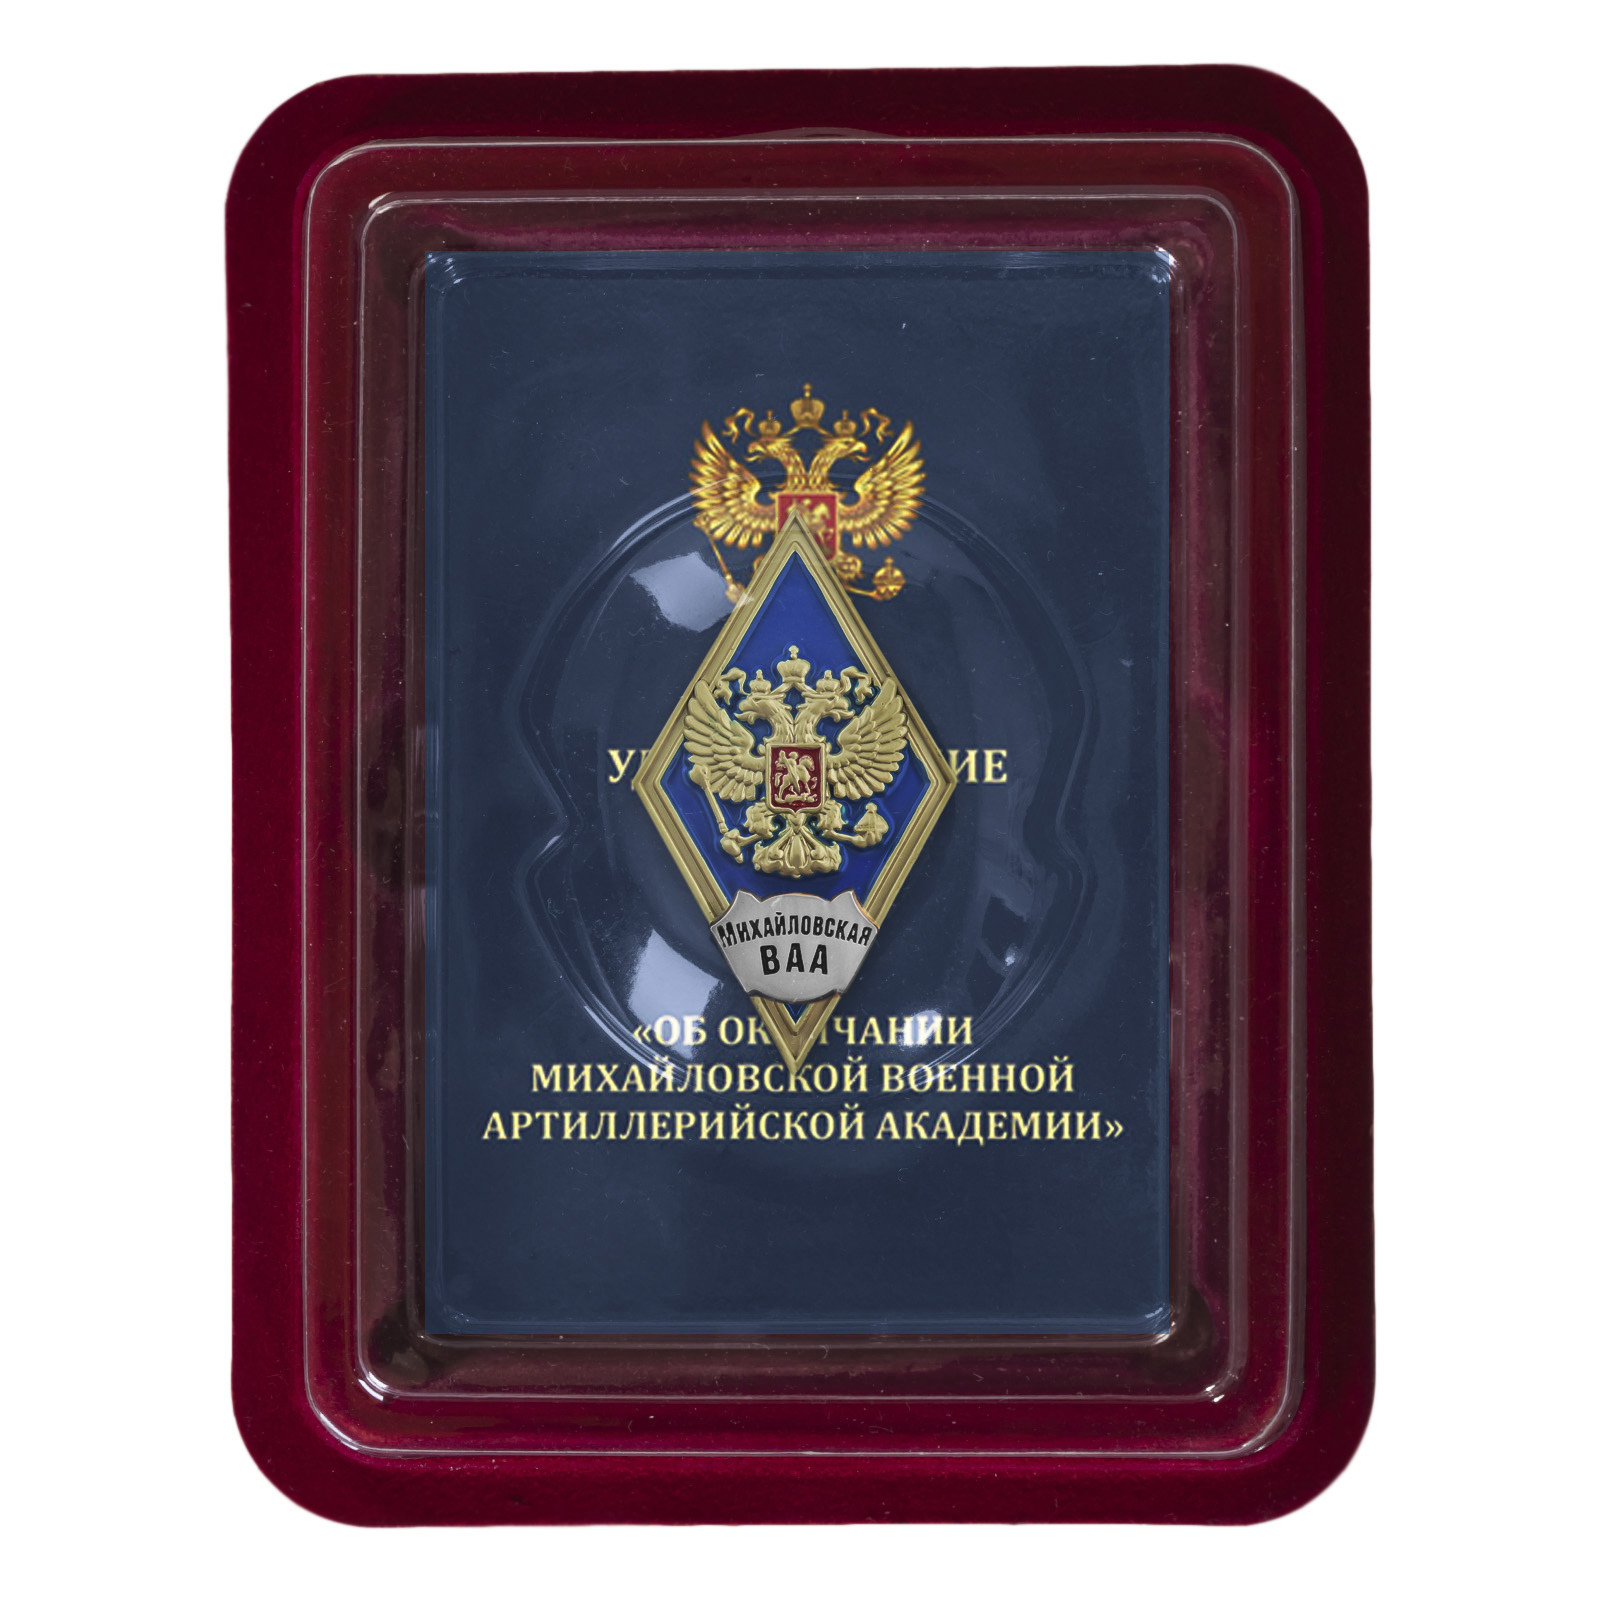 Купить знак об окончании Михайловской военной артиллерийской академии выгодно